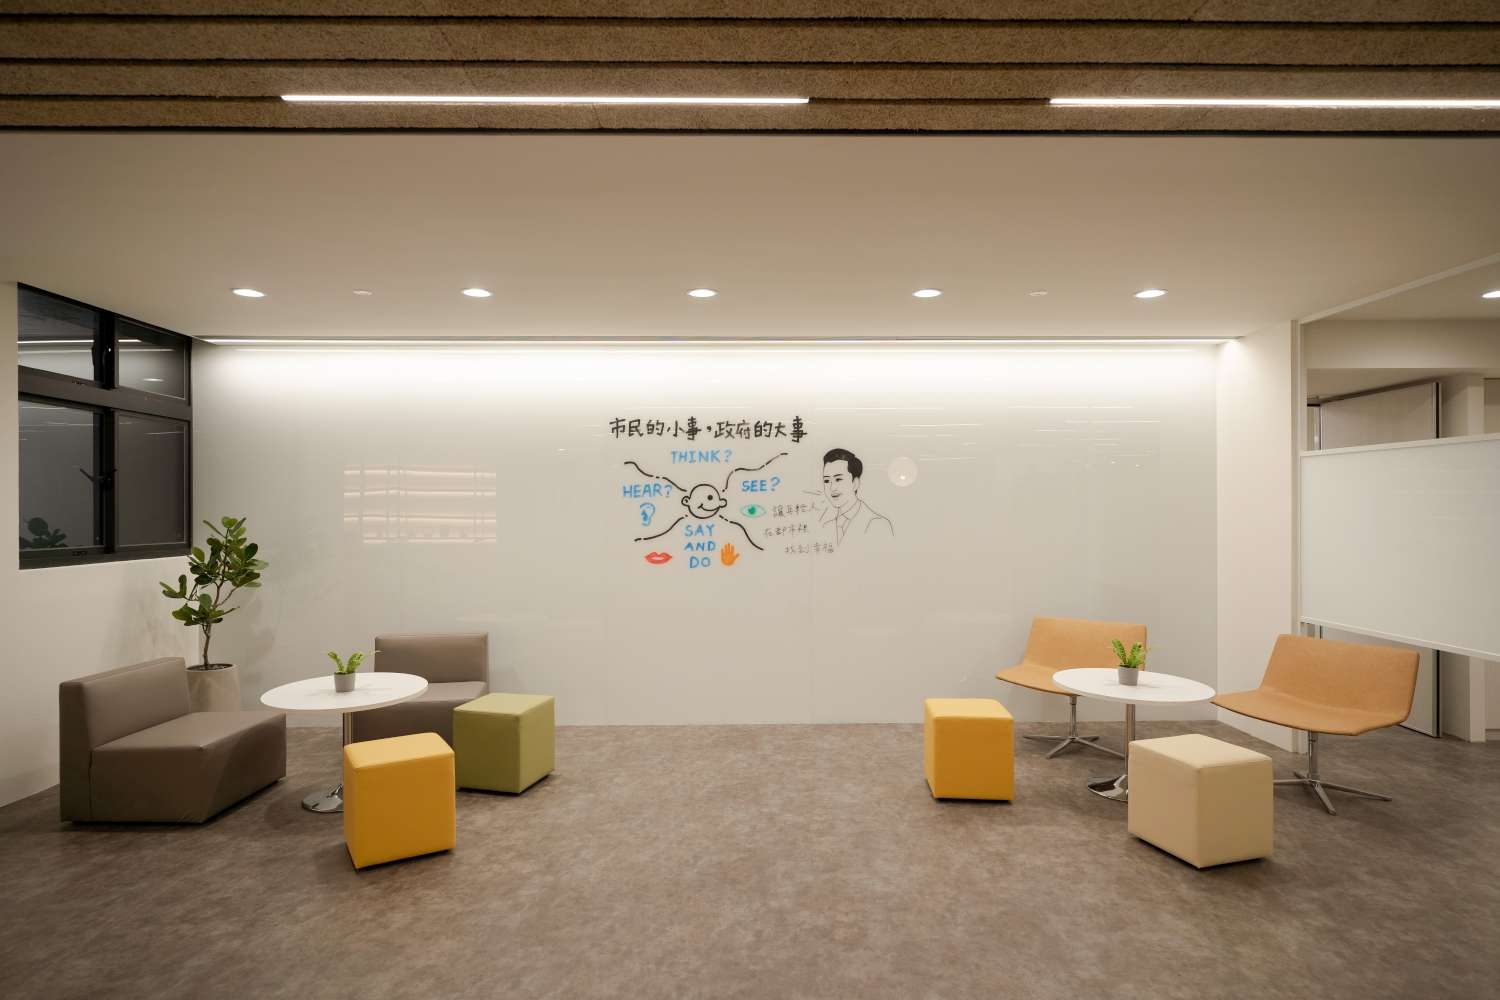 身障就業大樓2樓分為辦公區、接待服務區、個案諮商室及室內外公共交流空間。